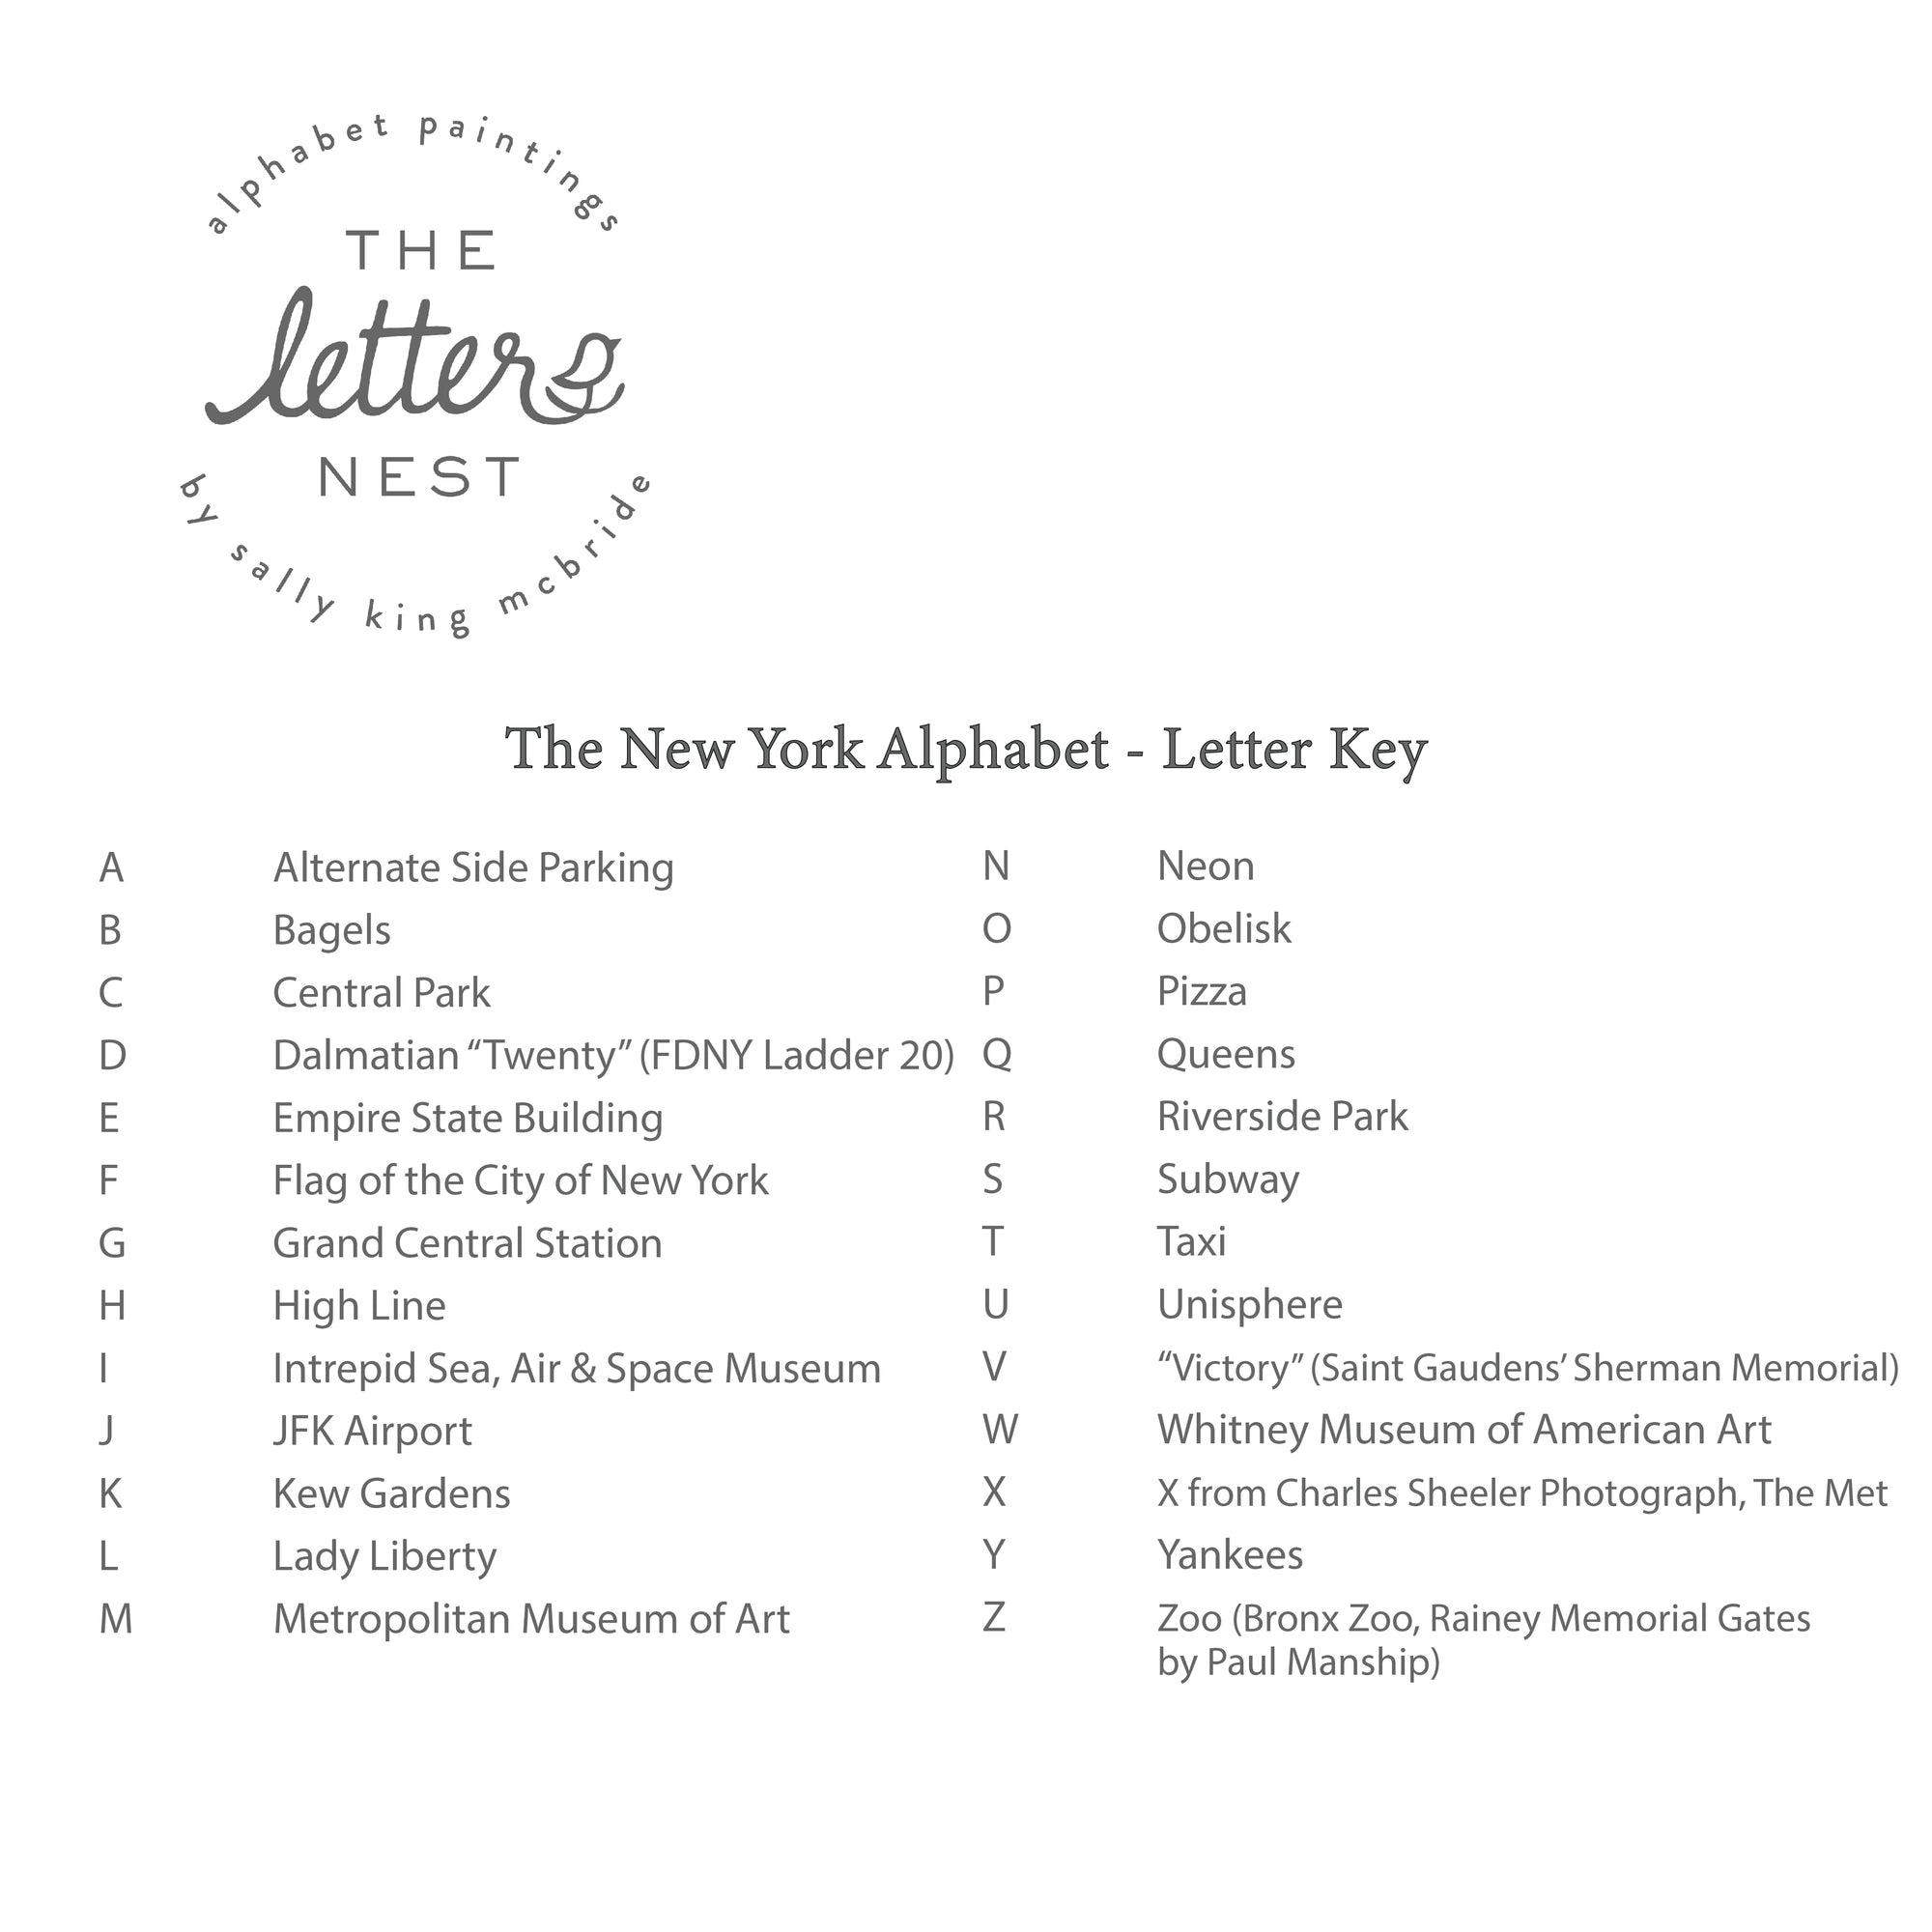 Letter Key for the New York City Alphabet